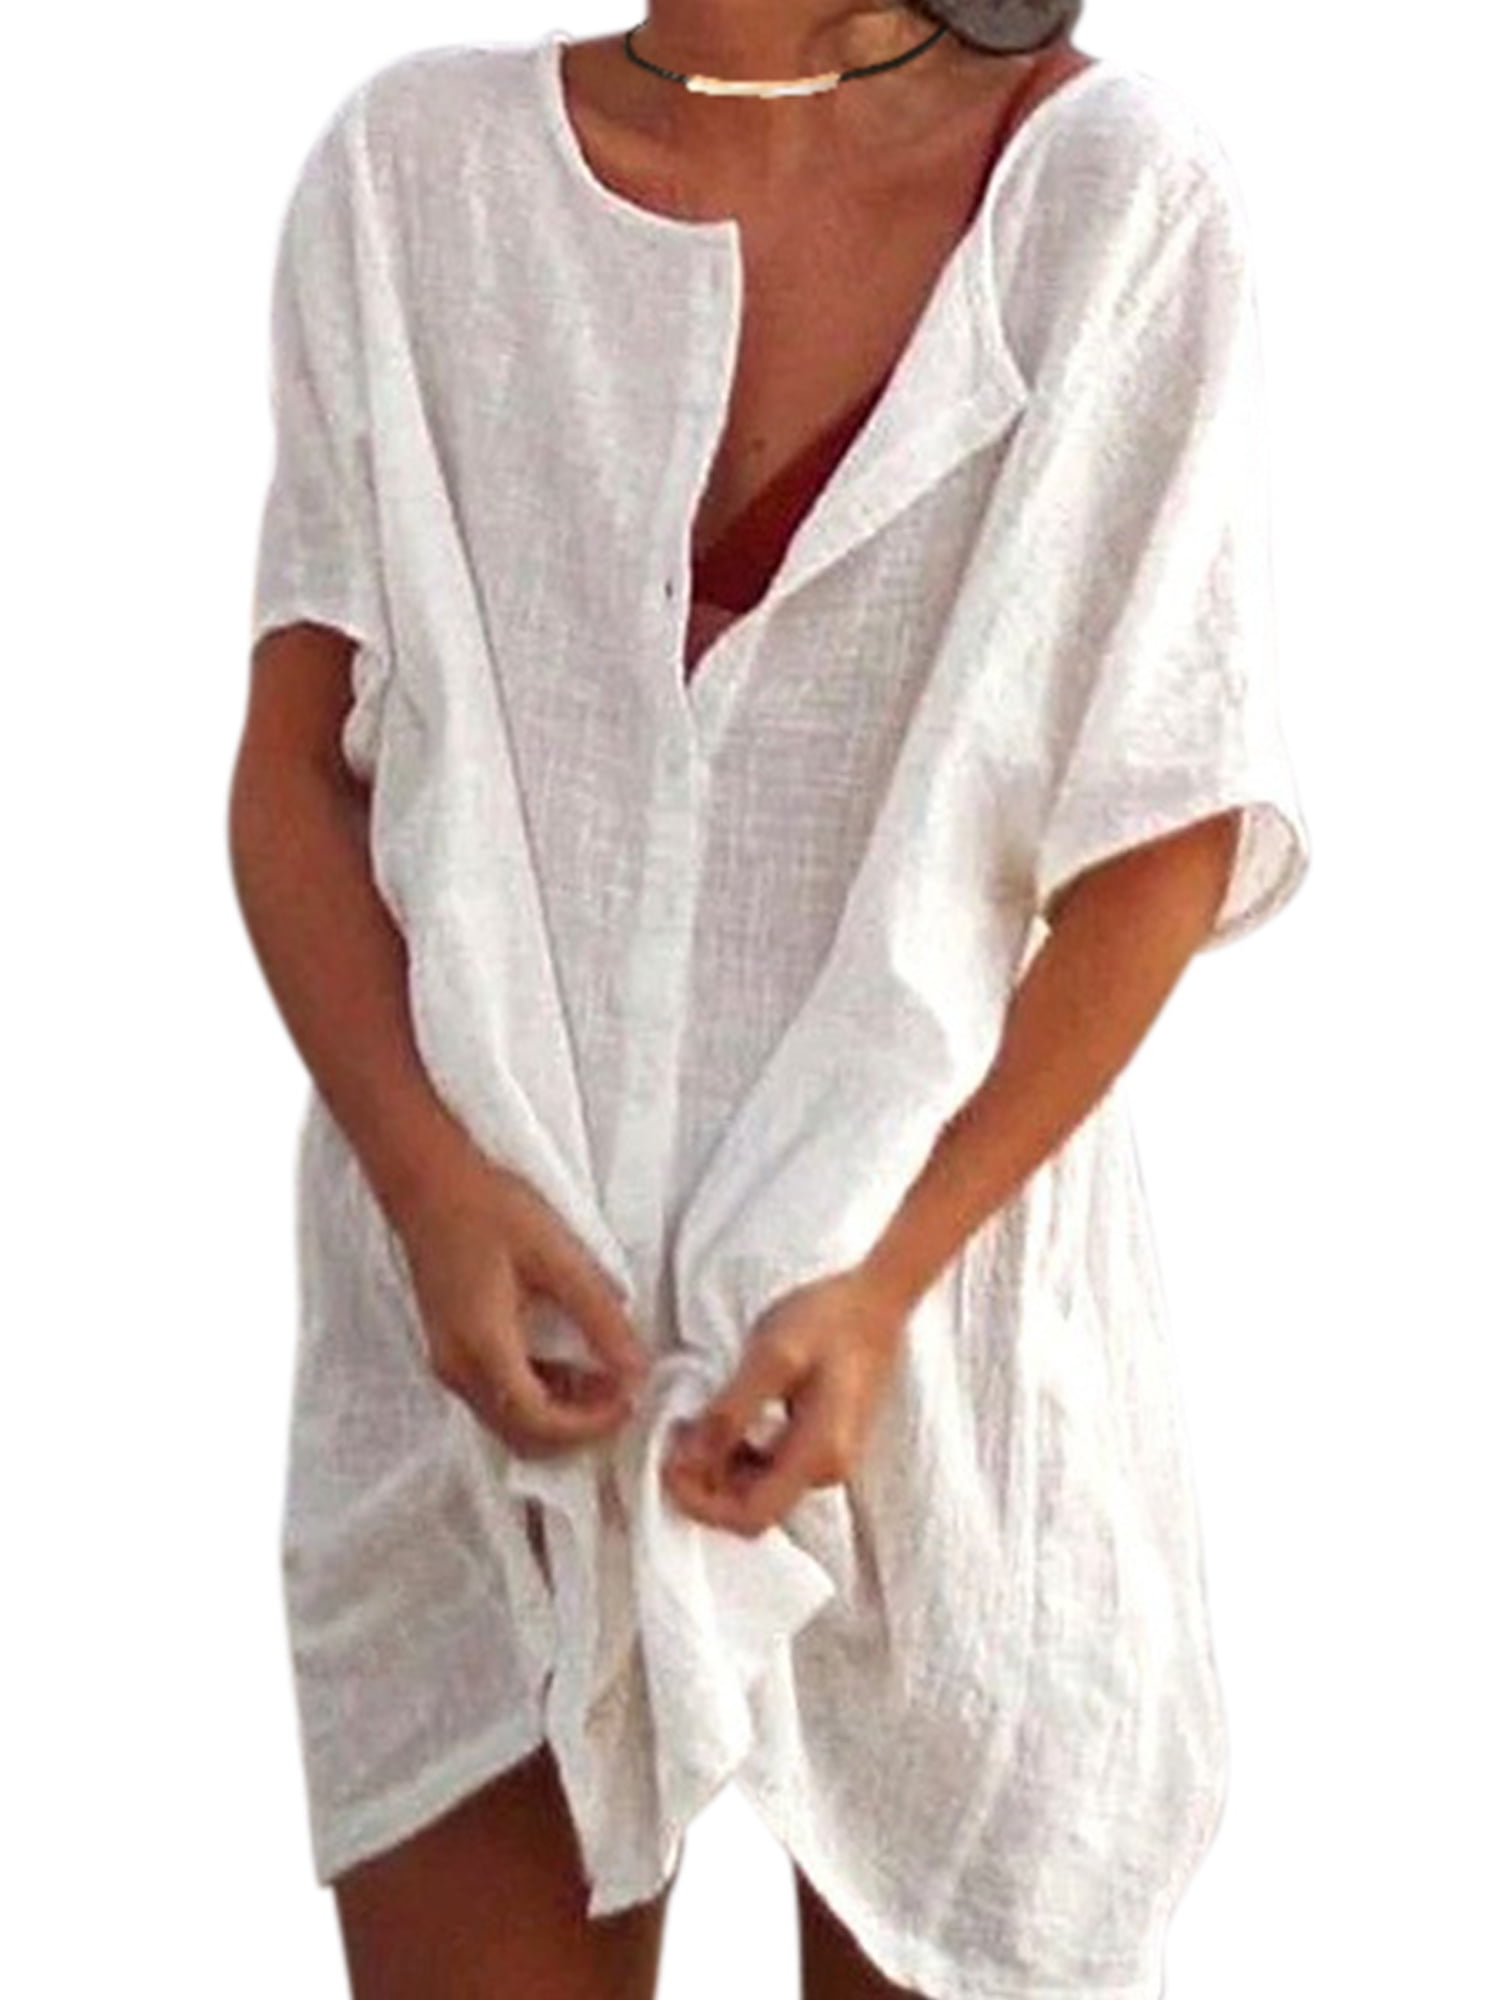 S-5XL Women Summer Cotton Linen Sleeveless Pocket Party Casual Beach Tops Dress 